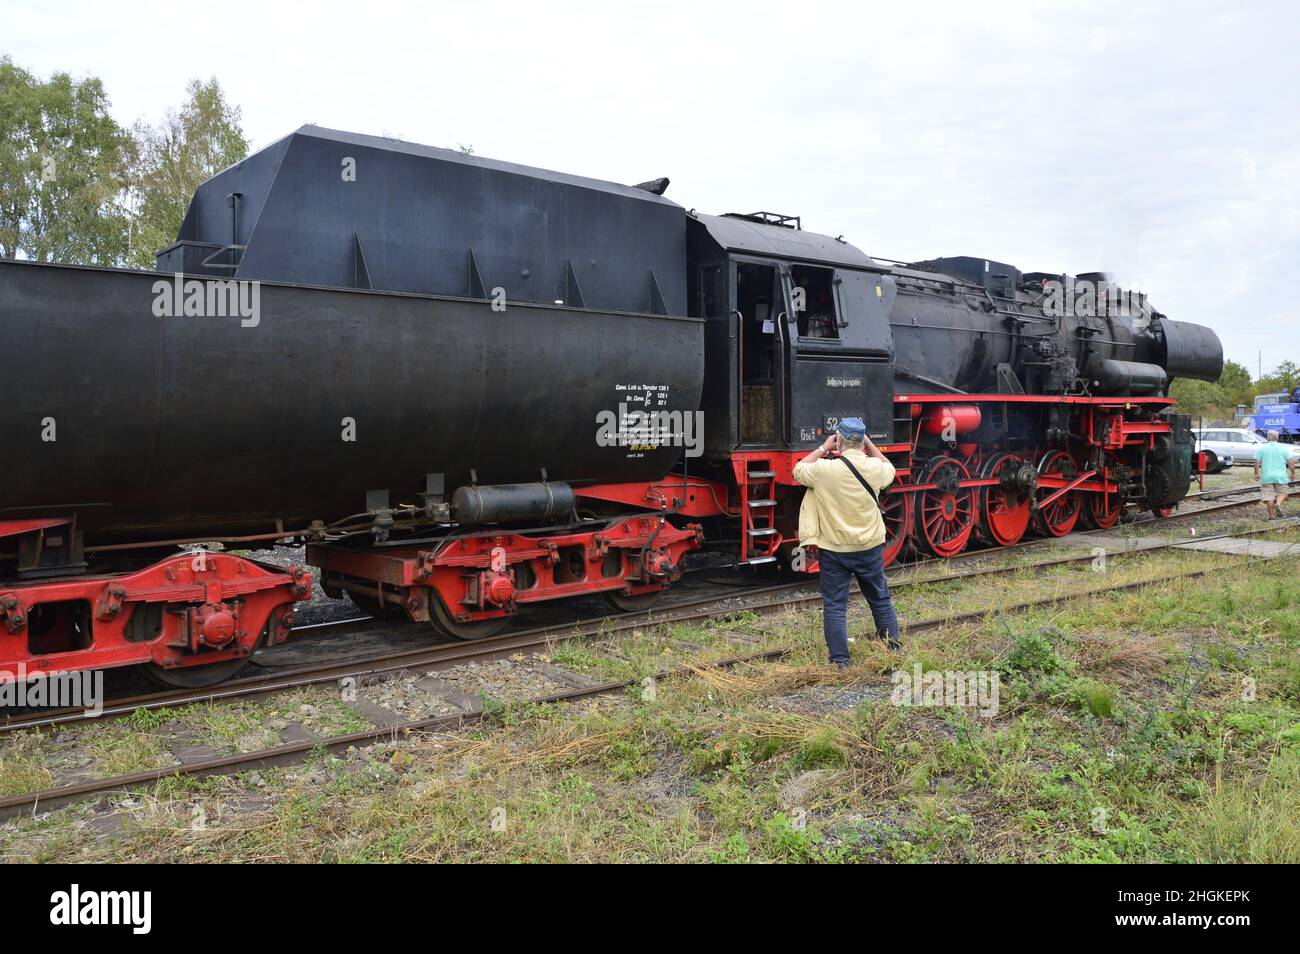 Locomotive à vapeur de classe 528038 hantée .Stadthagen, allemagne Banque D'Images